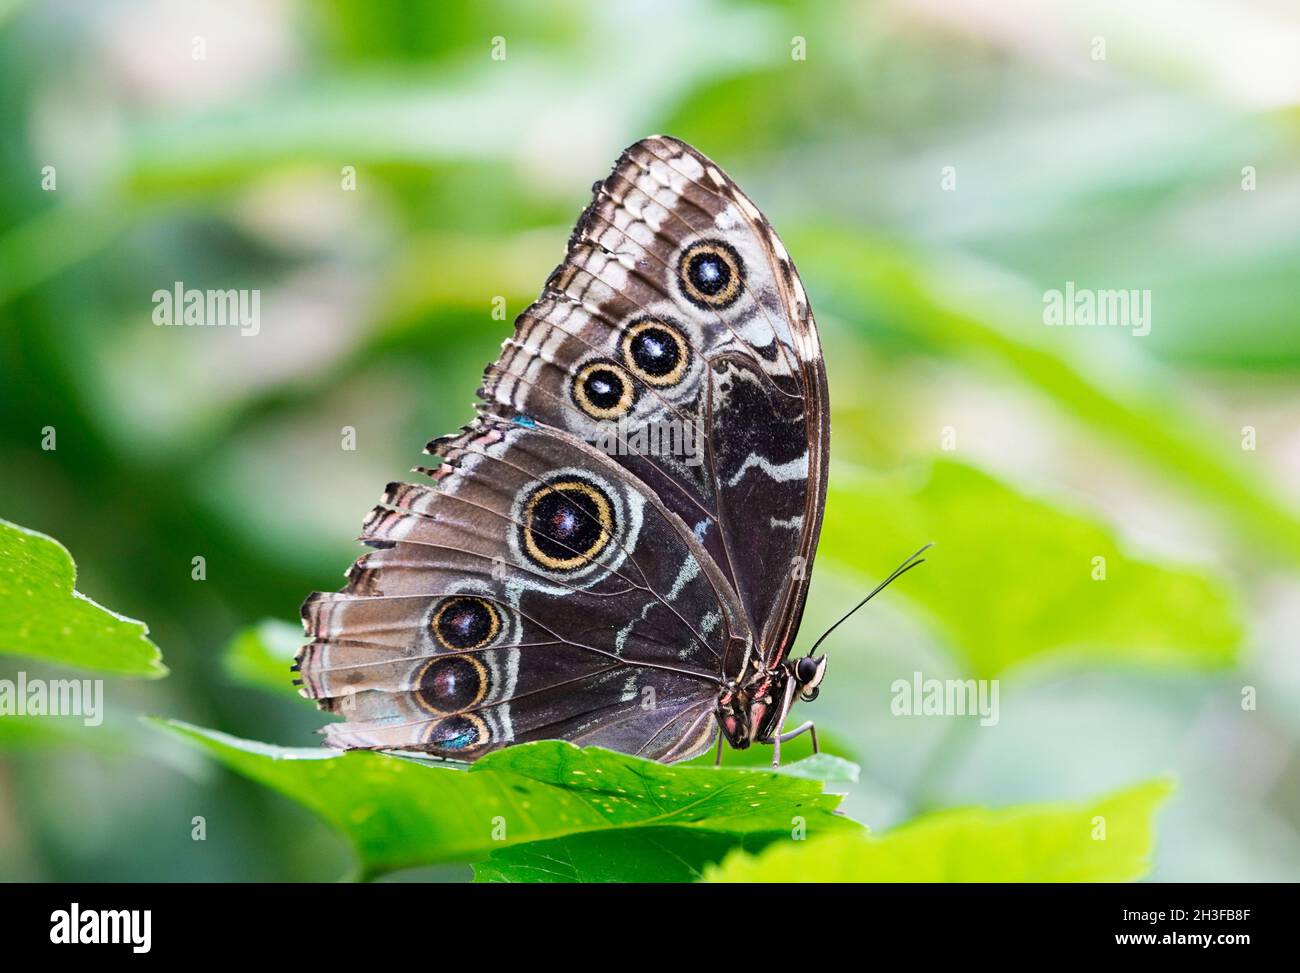 Cierre lateral de una mariposa morfo en una hoja verde. Mariposa con alas blancas marrones. Foto de stock